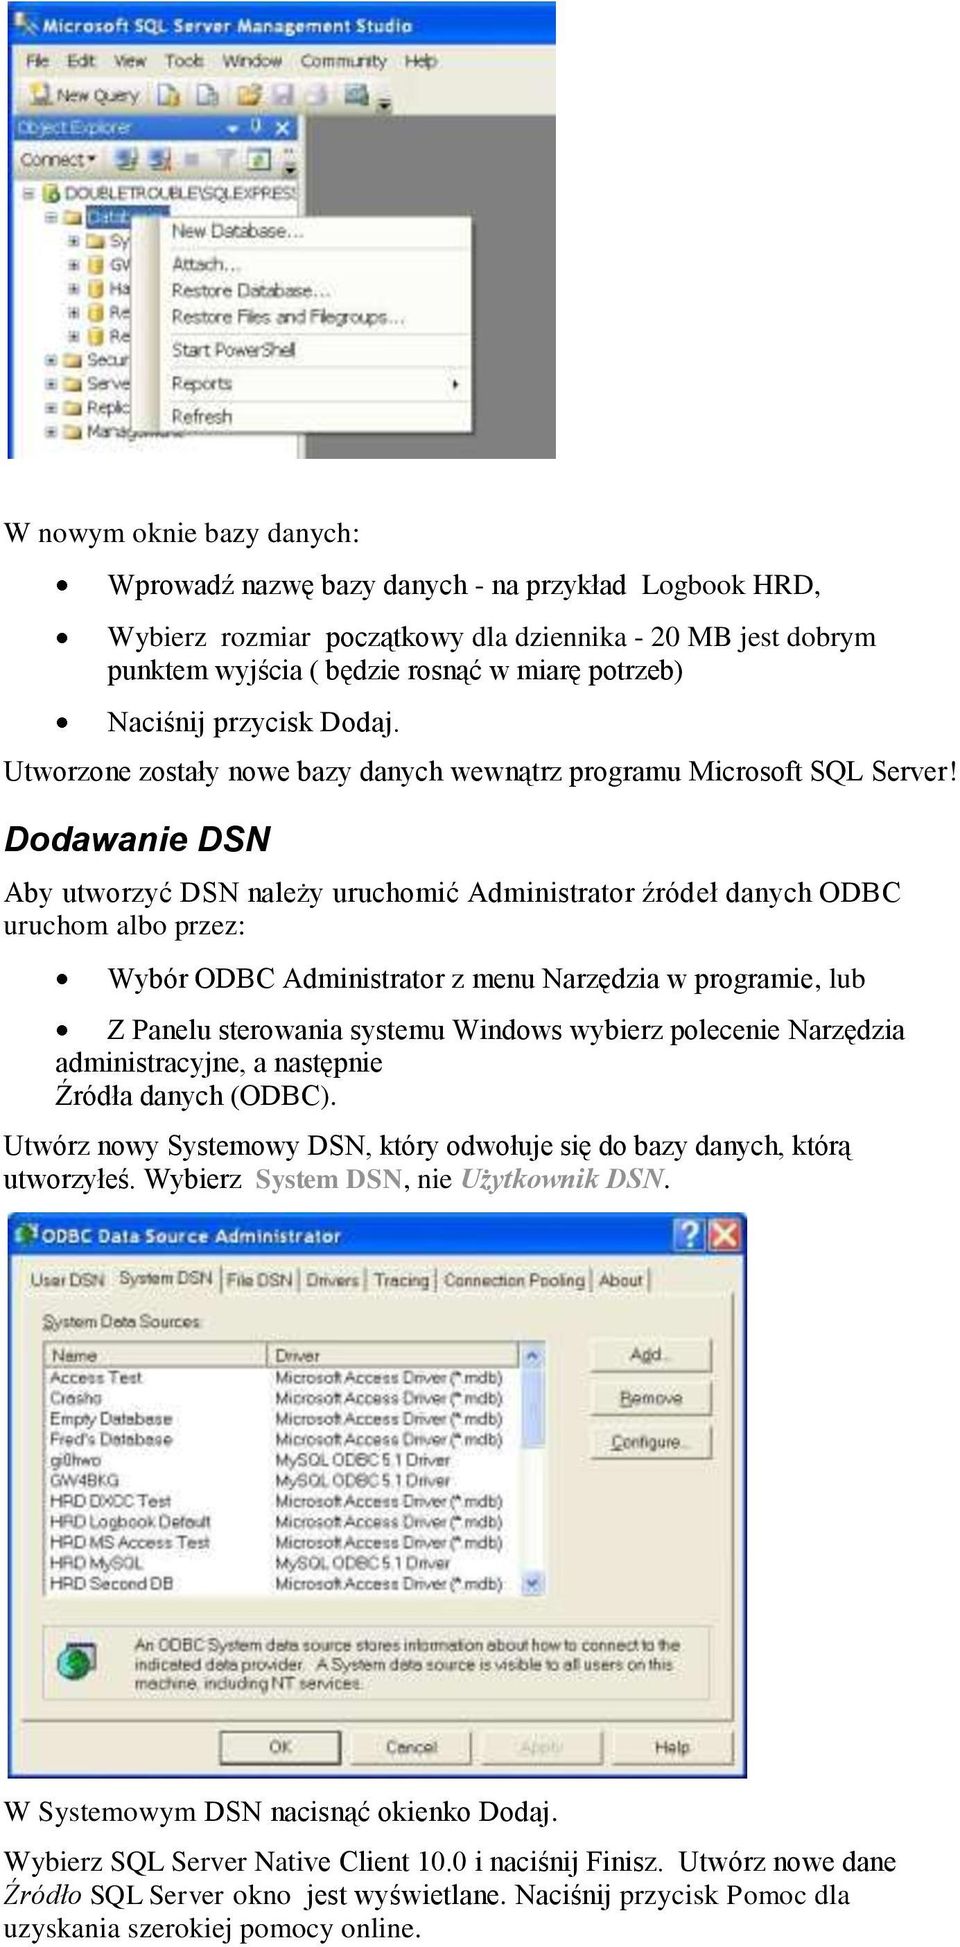 Dodawanie DSN Aby utworzyć DSN należy uruchomić Administrator źródeł danych ODBC uruchom albo przez: Wybór ODBC Administrator z menu Narzędzia w programie, lub Z Panelu sterowania systemu Windows